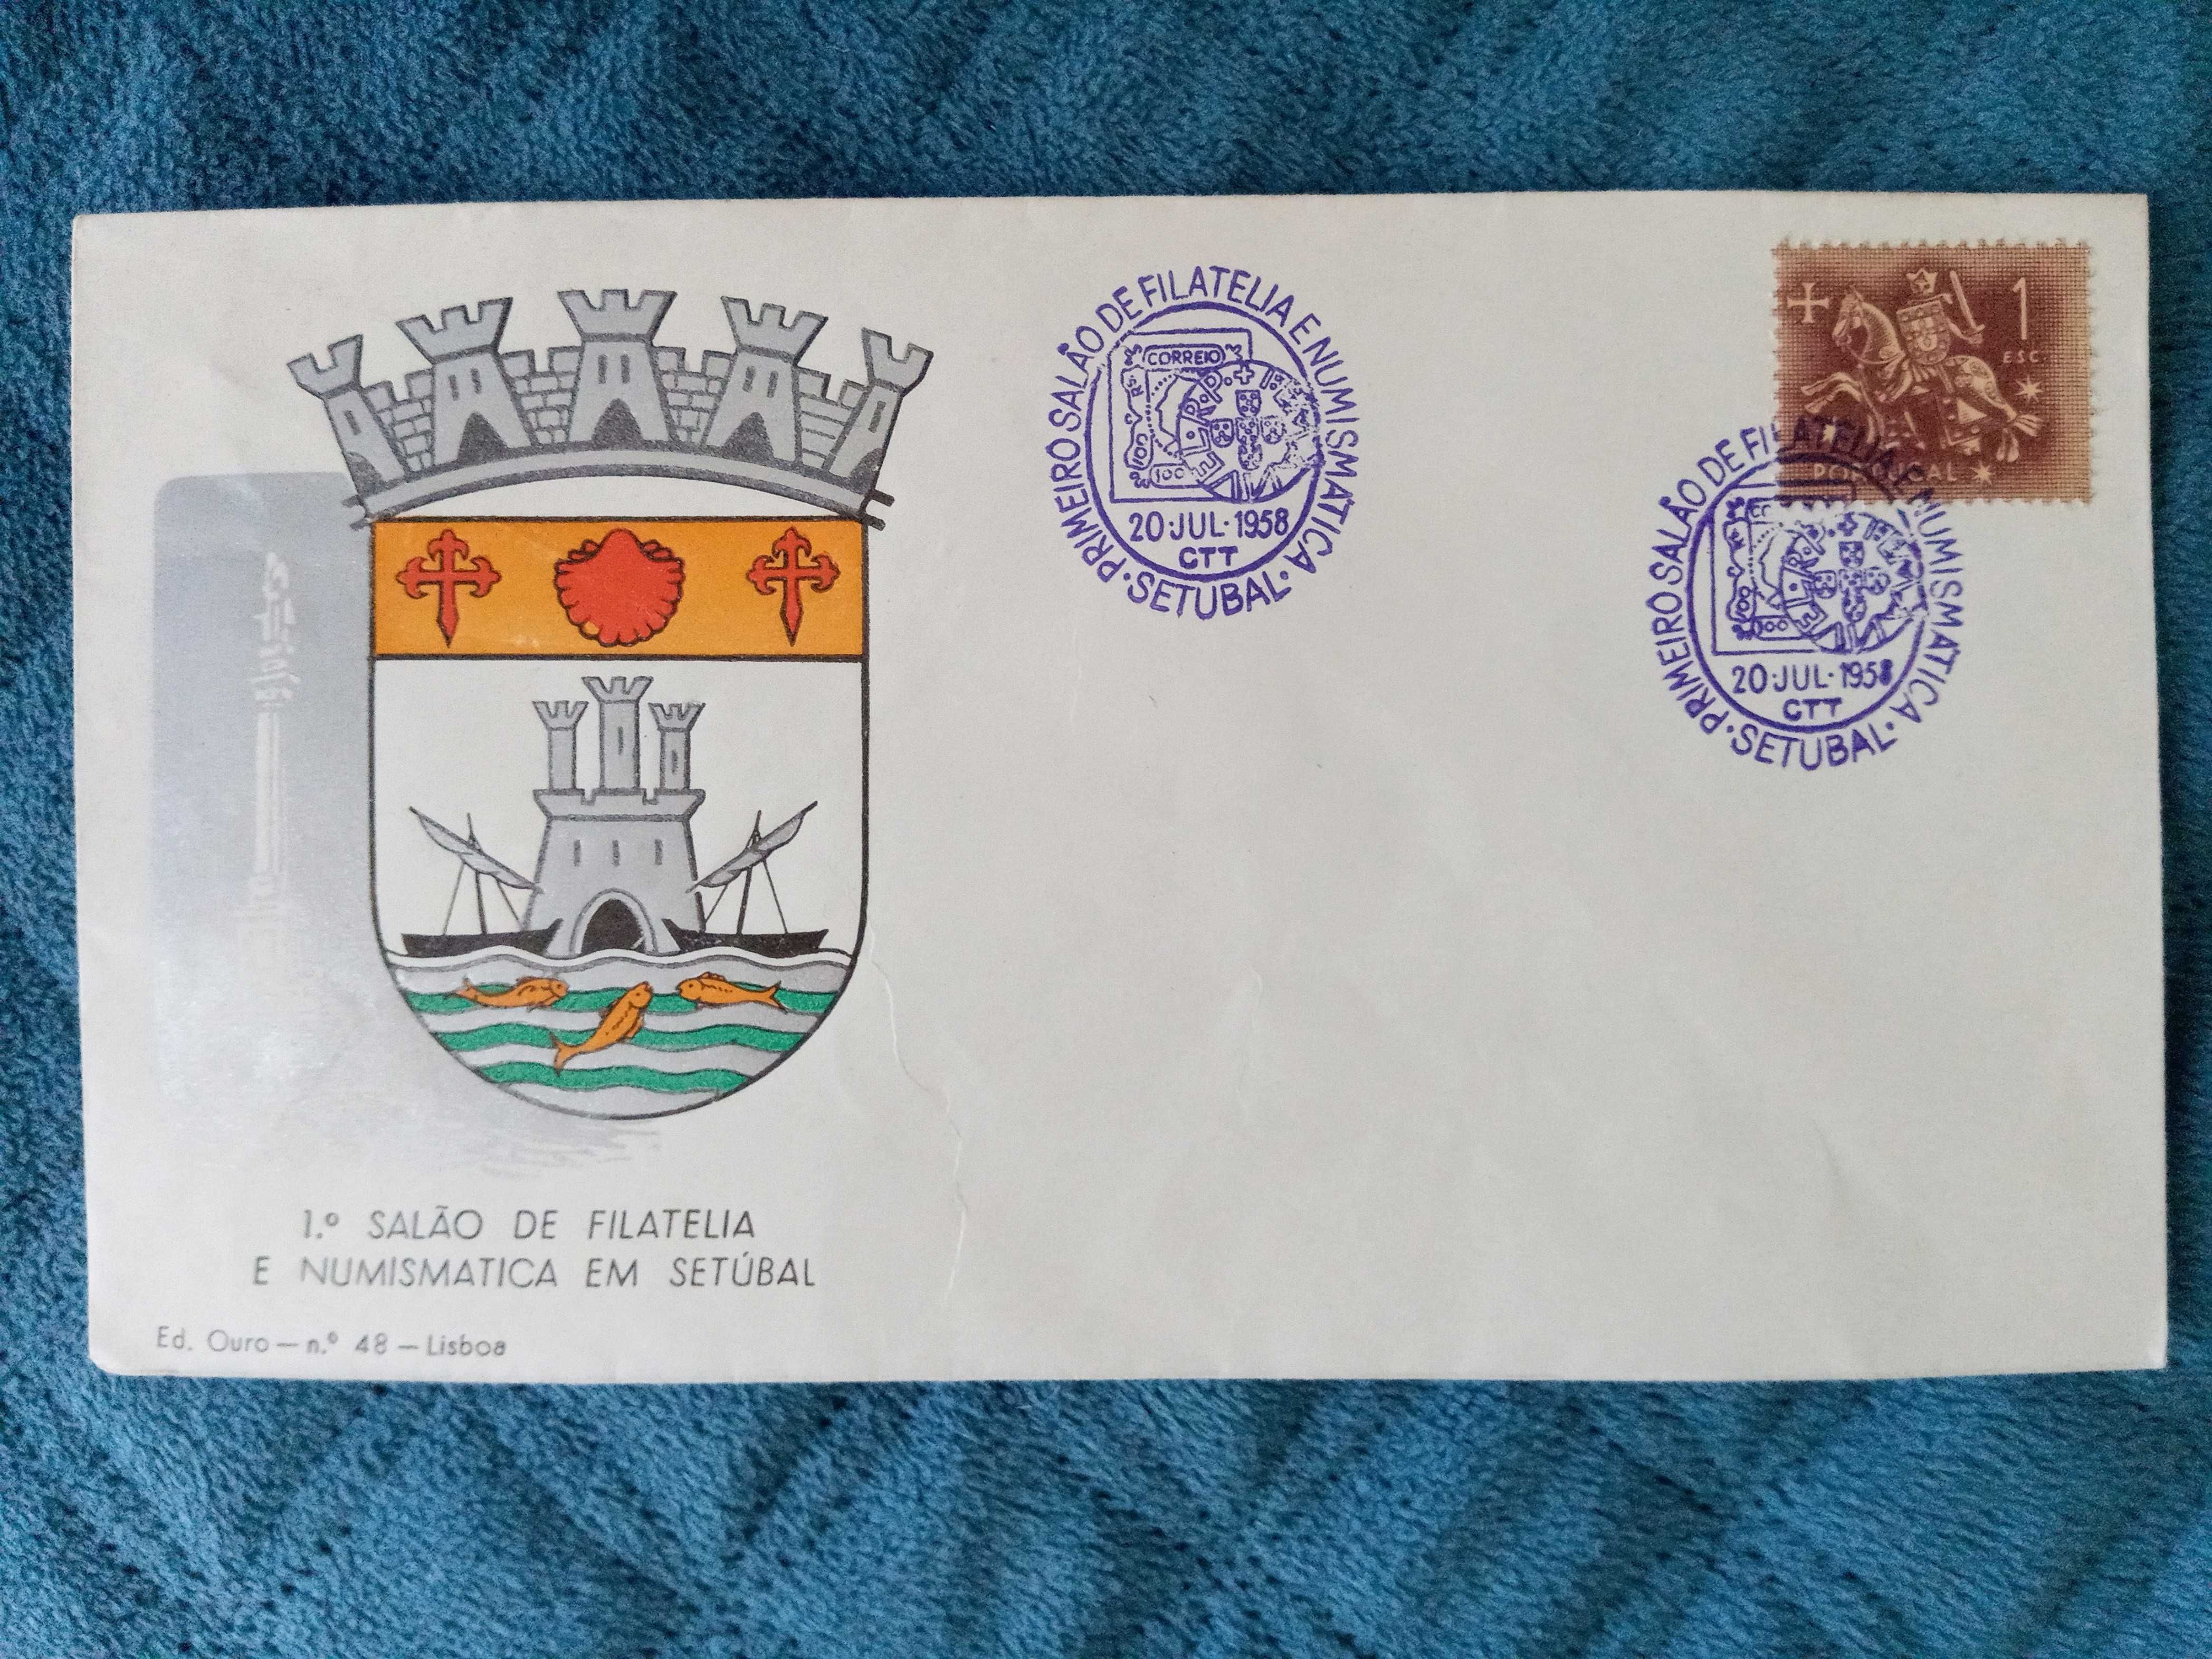 Colessionismo, envelope com selo muito antigo.